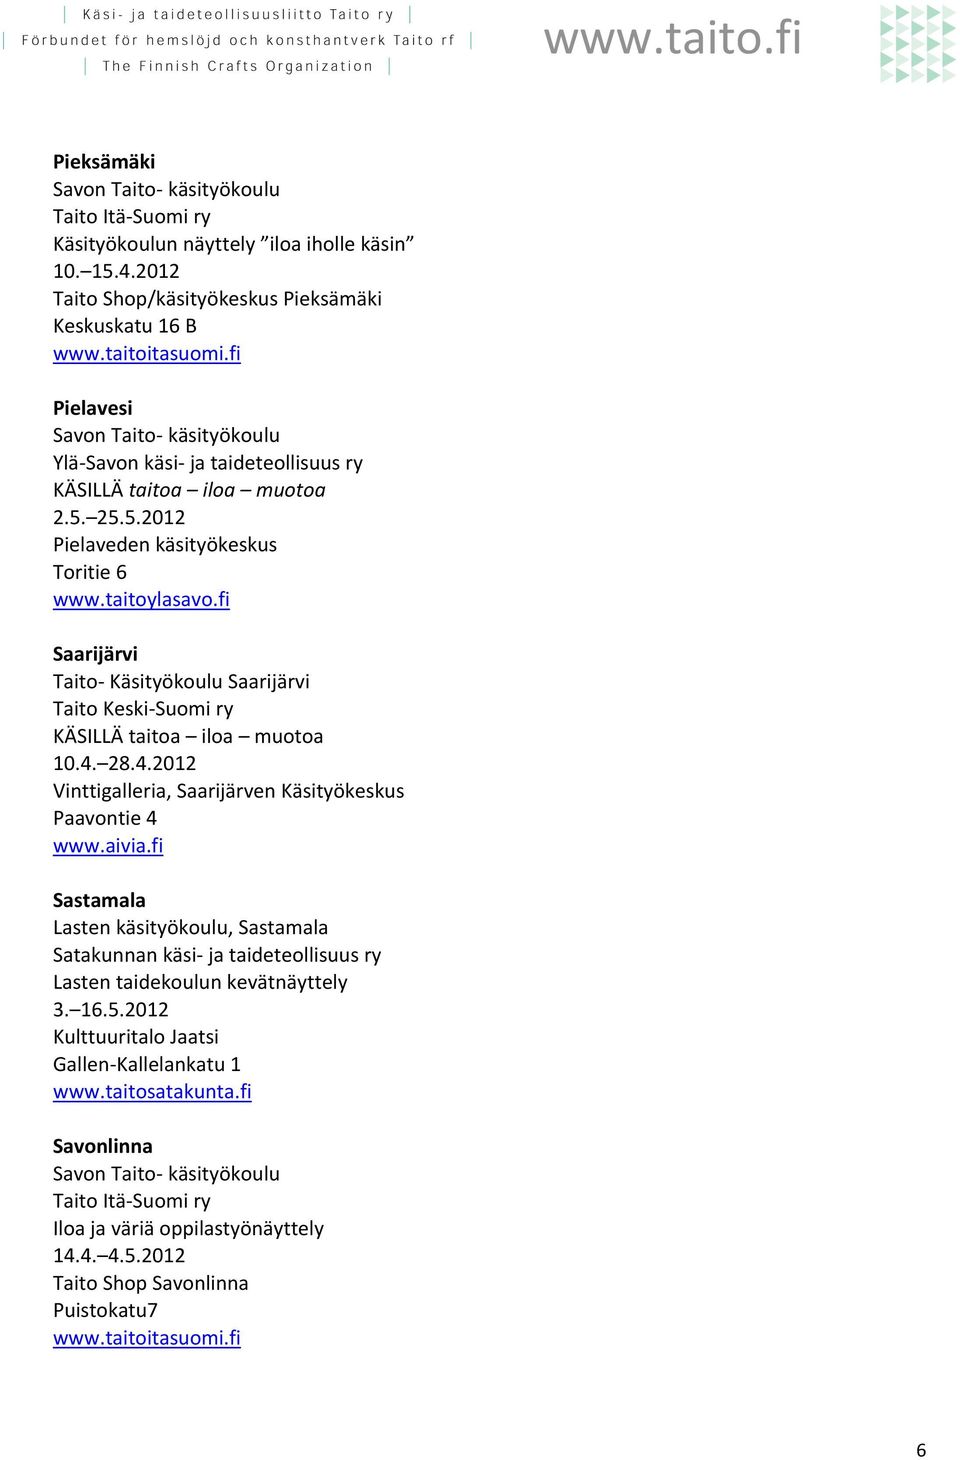 aivia.fi Sastamala Lasten käsityökoulu, Sastamala Satakunnan käsi ja taideteollisuus ry Lasten taidekoulun kevätnäyttely 3. 16.5.